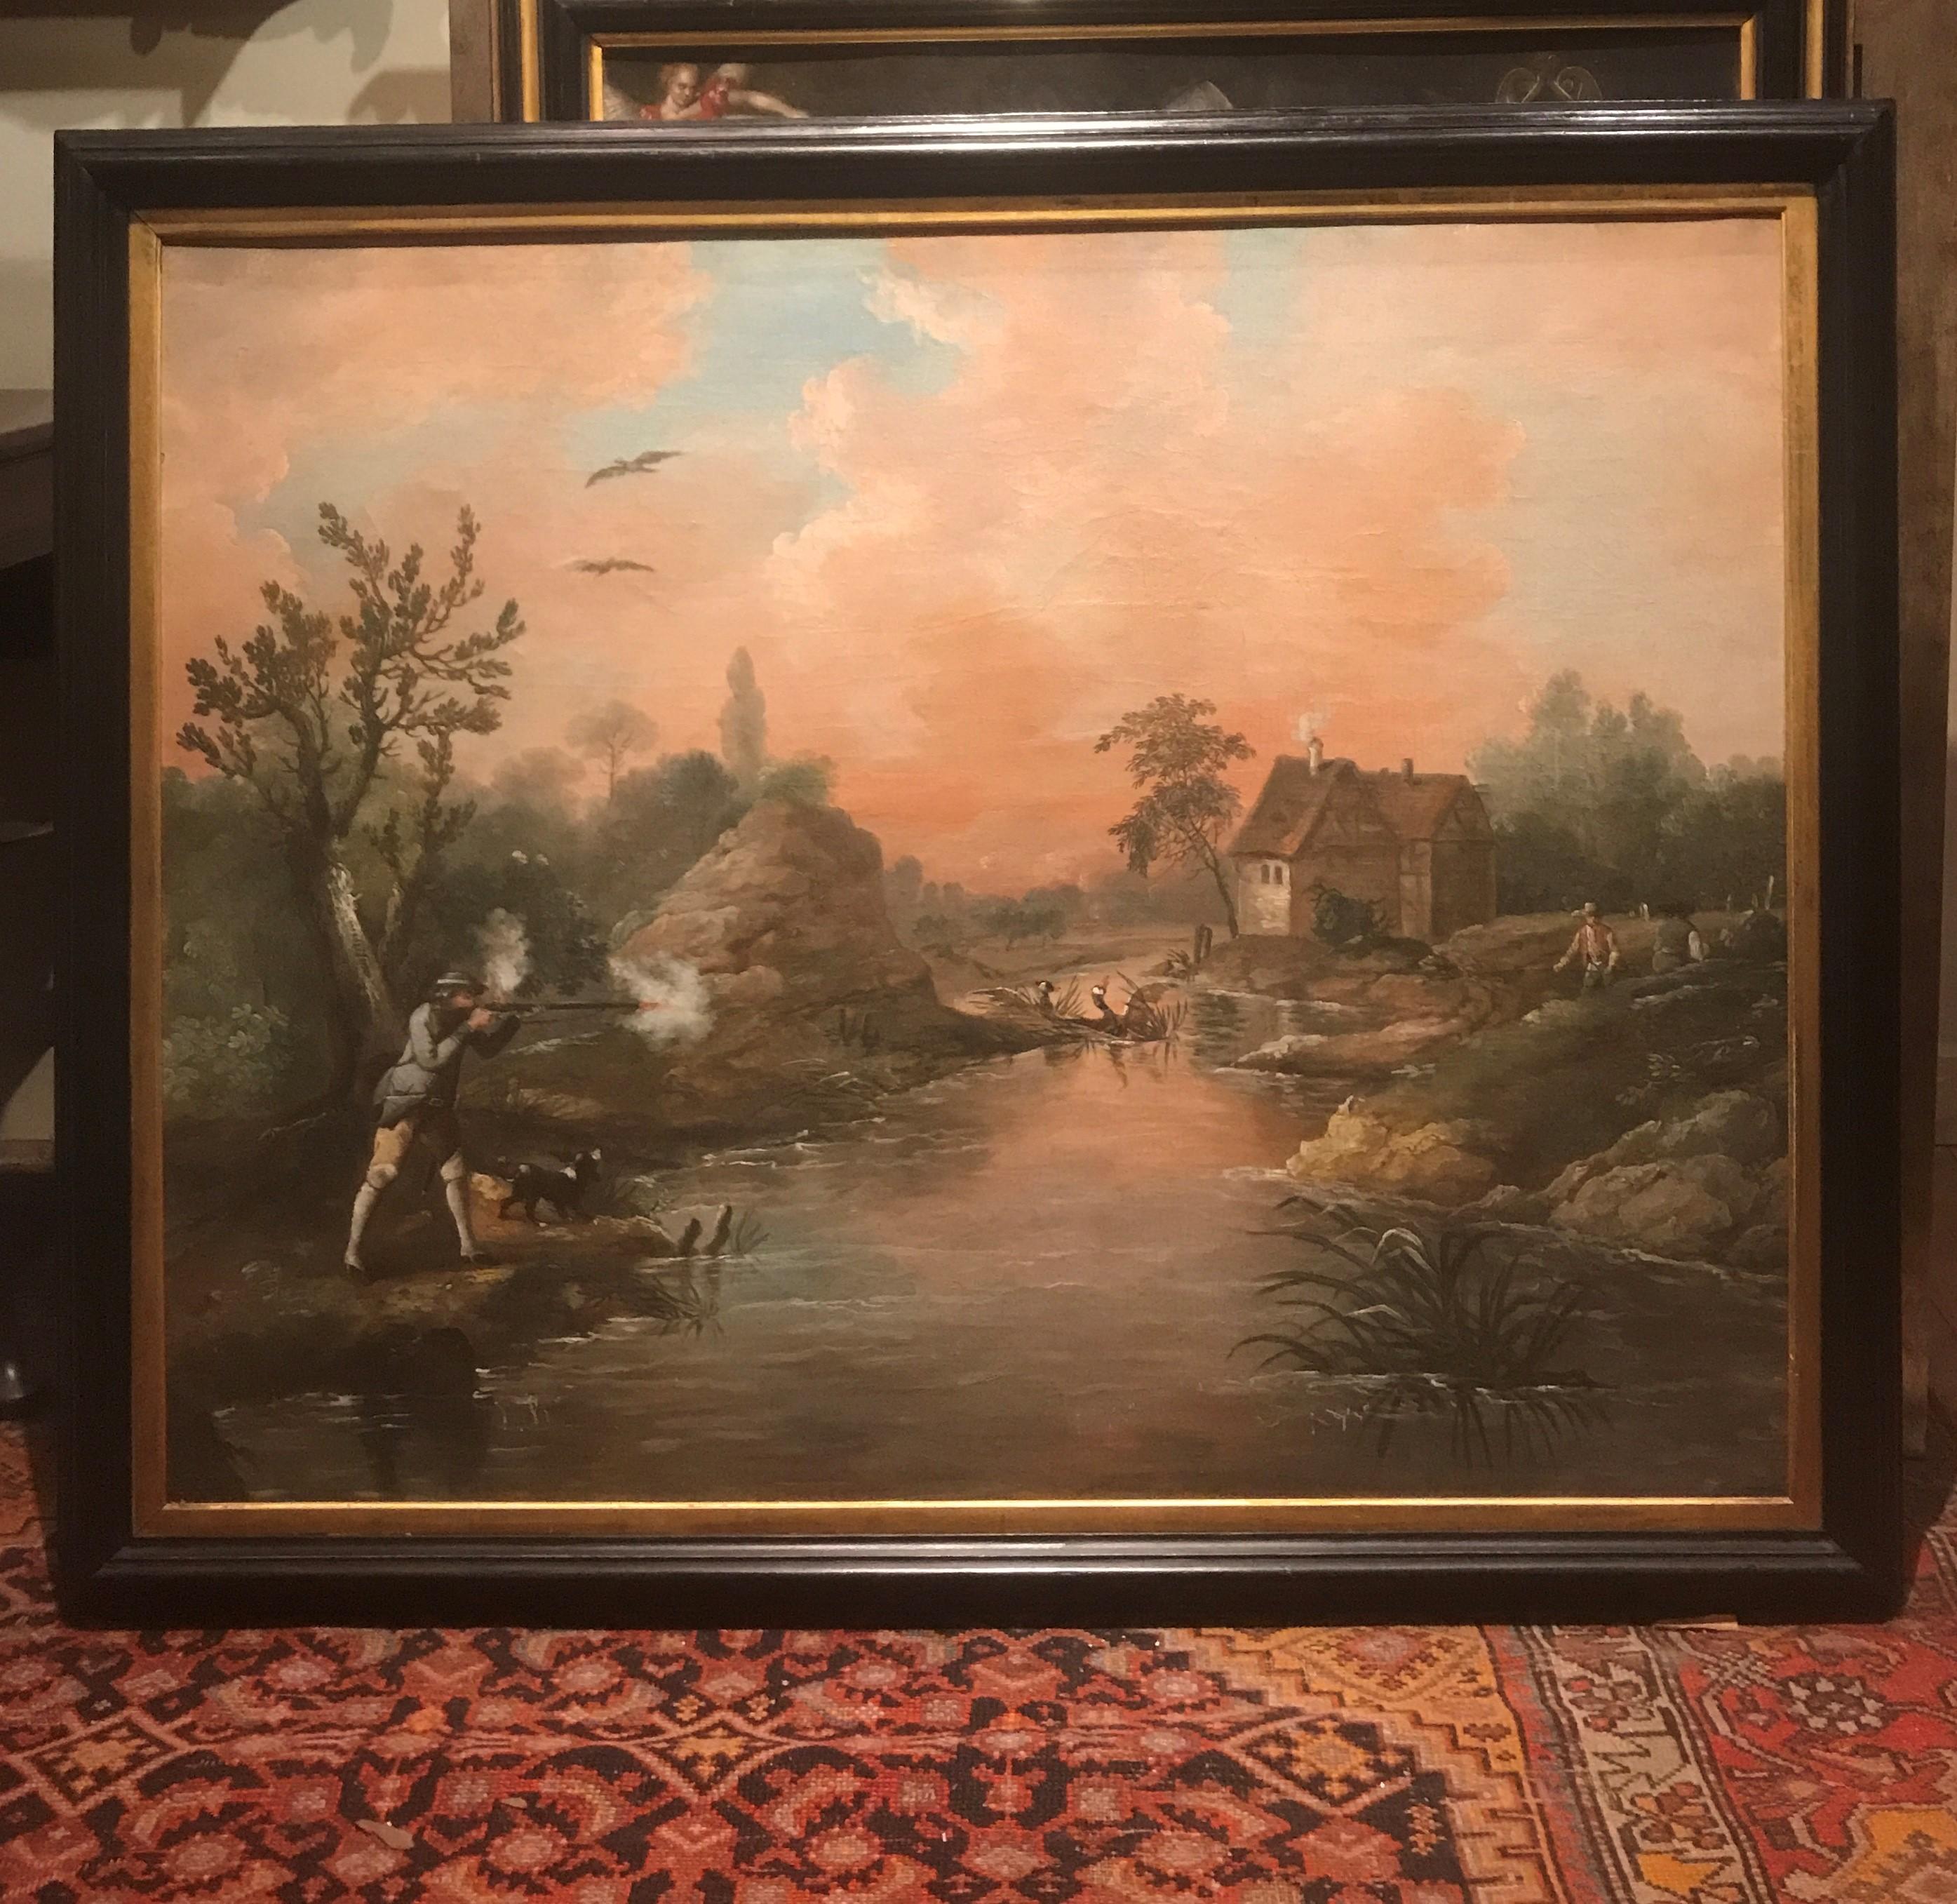 Animal Painting Attribued to James Ross Snr. - Une grande peinture de chasse du 18e siècle représentant un canard volant